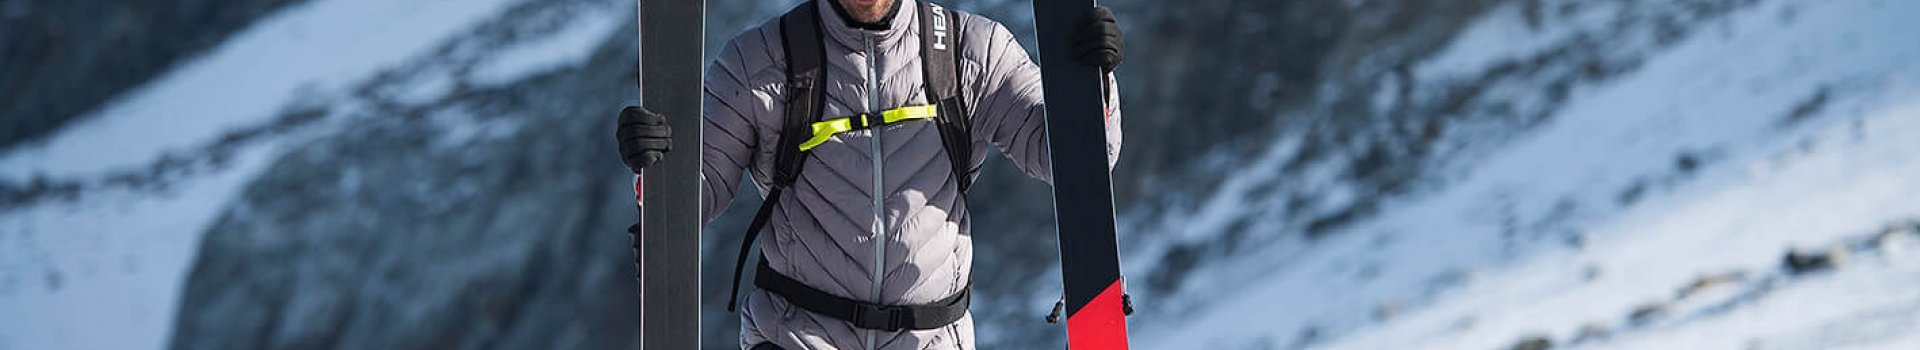 Wyprzedaż sprzętu narciarskiego – uzupełnij braki w swoim wyposażeniu